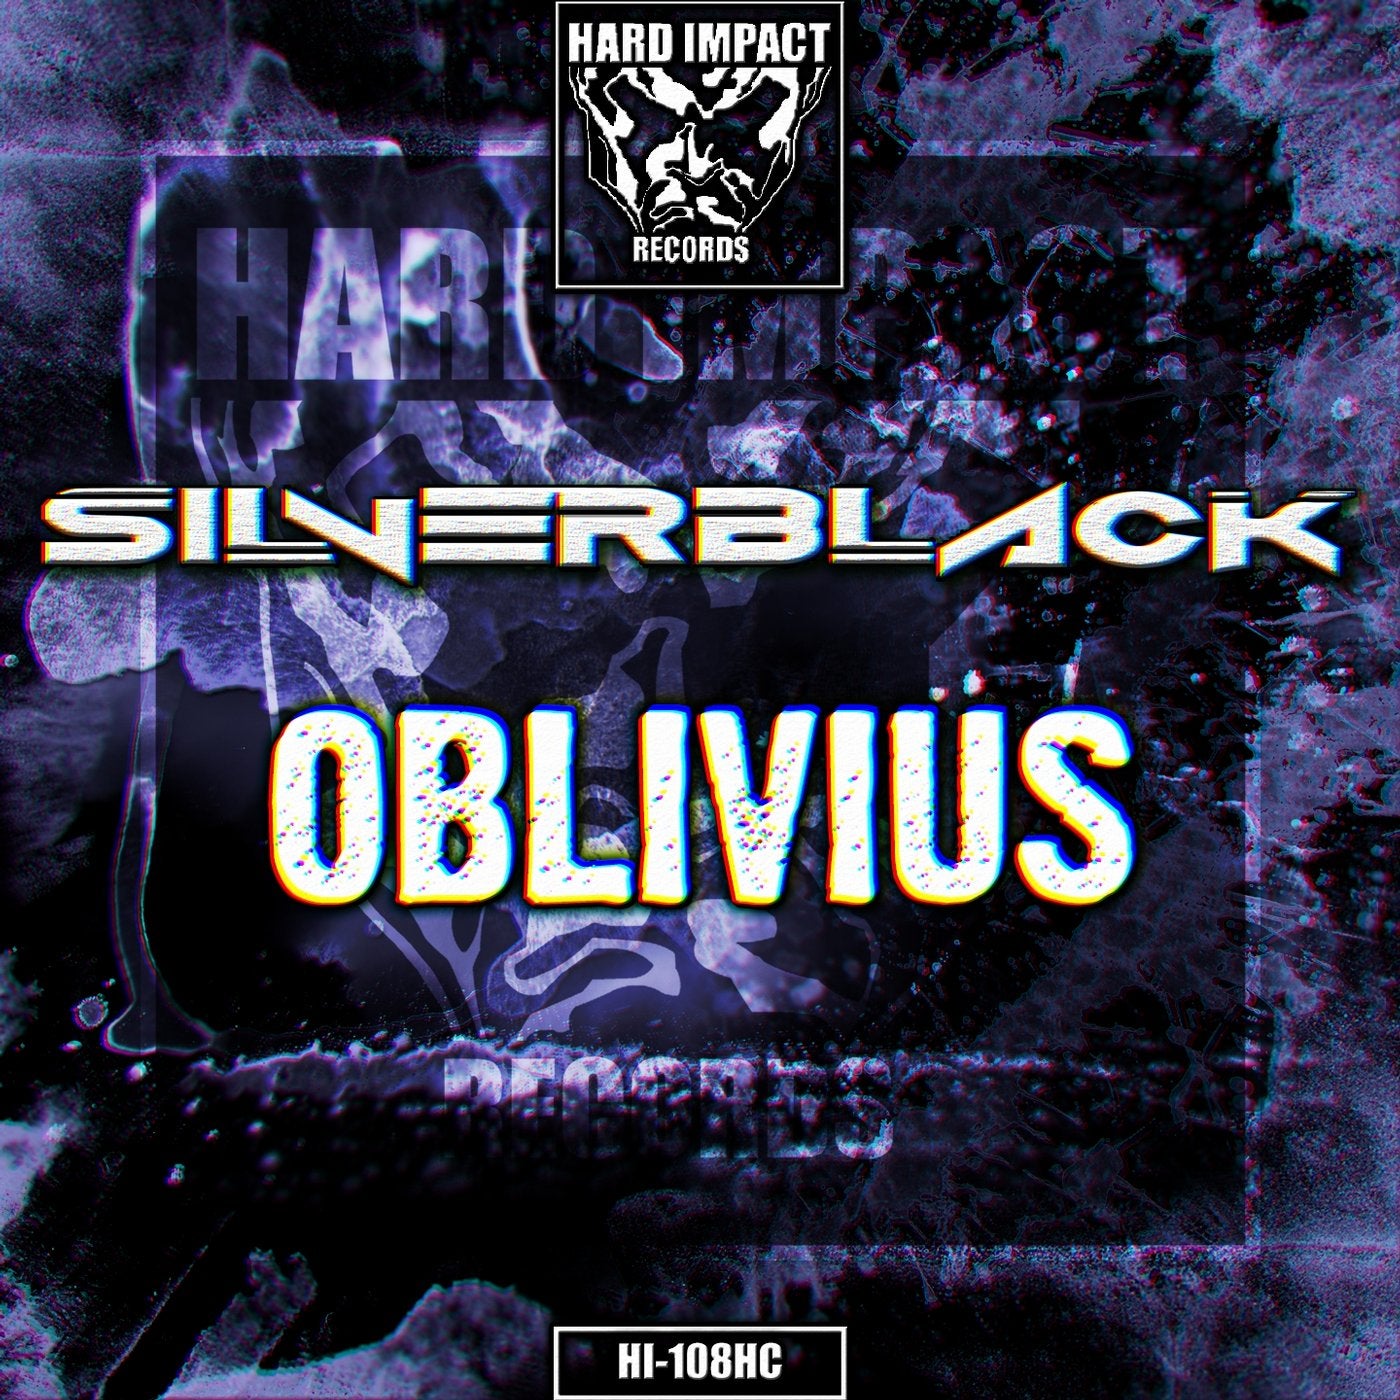 Oblivius